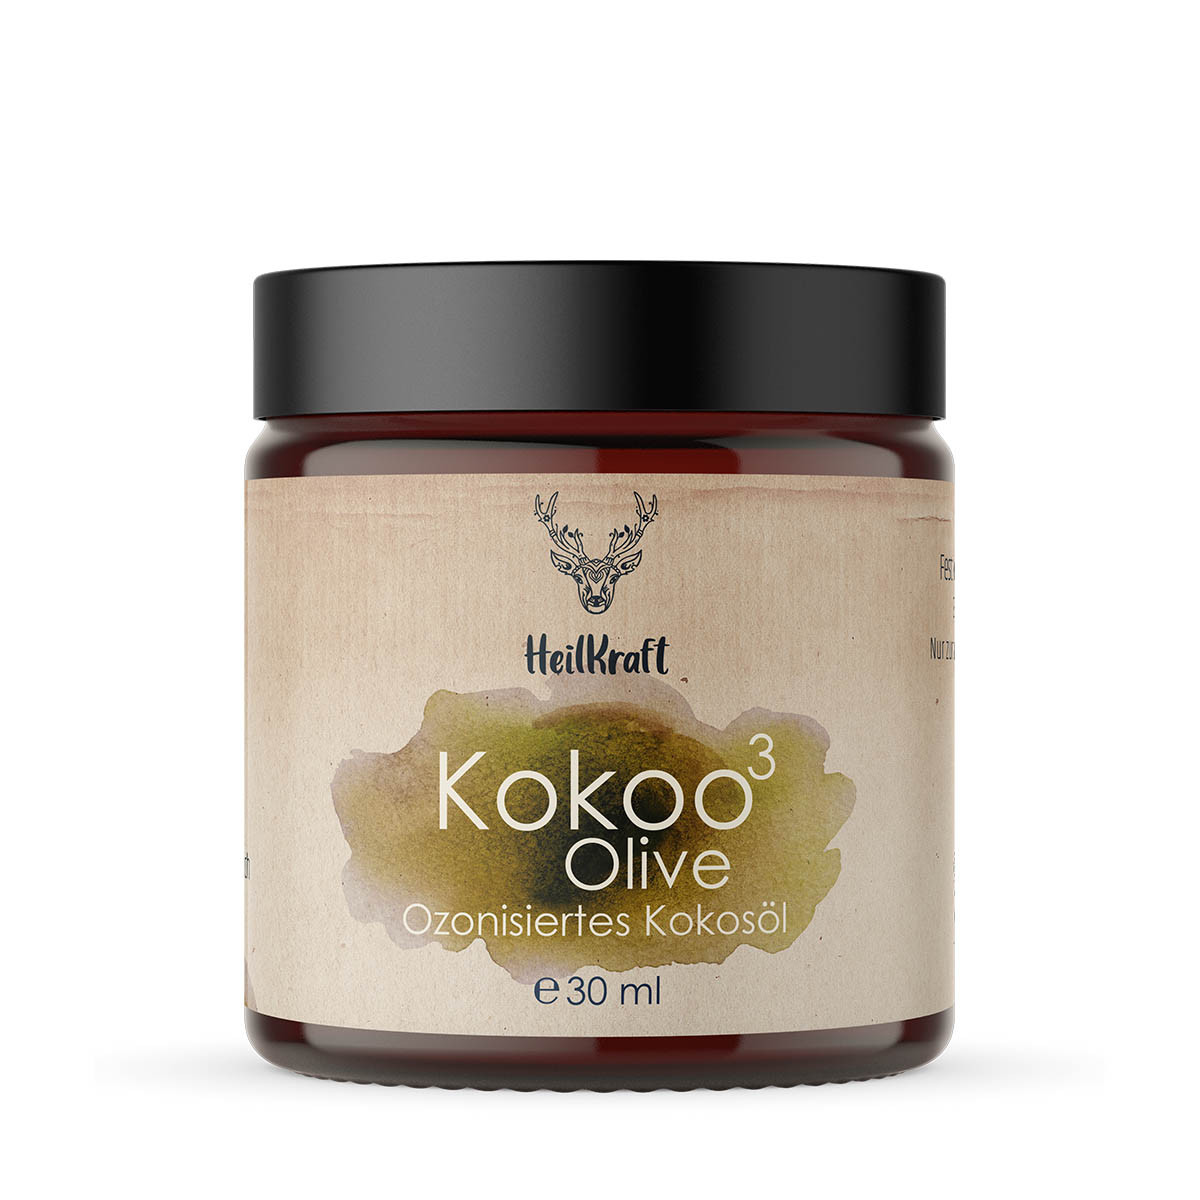 Kokoo³ Olive